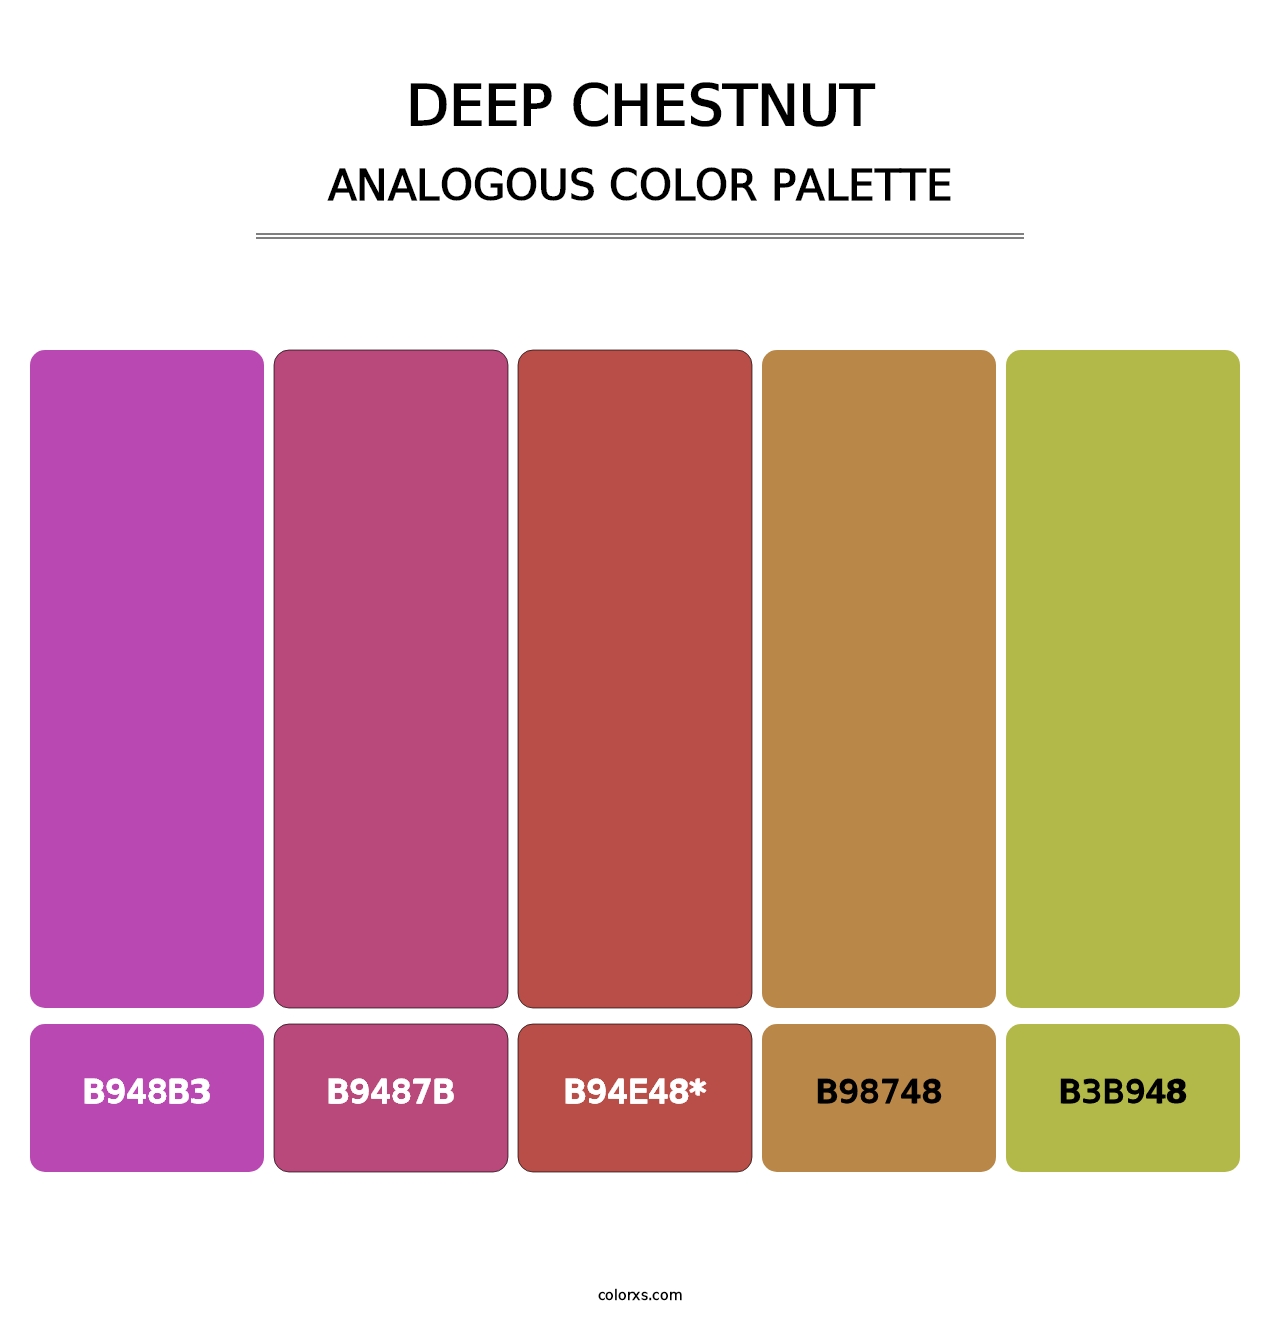 Deep Chestnut - Analogous Color Palette